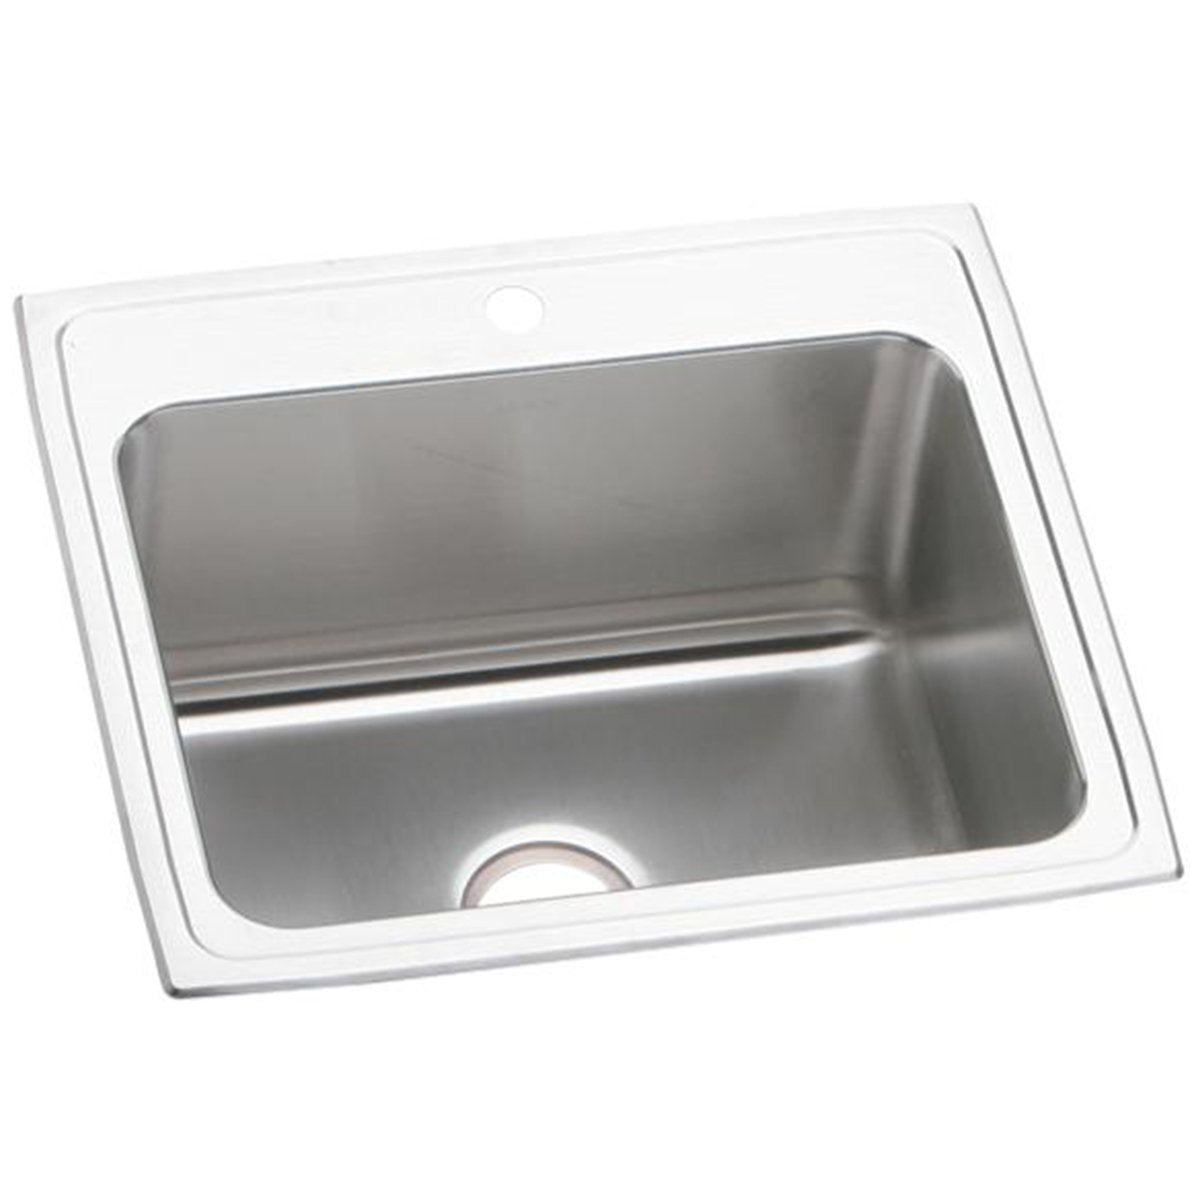 Elkay Lustertone Classic 25" x 21-1/4" x 10-1/8" Stainless Steel Single Bowl Drop-in Sink